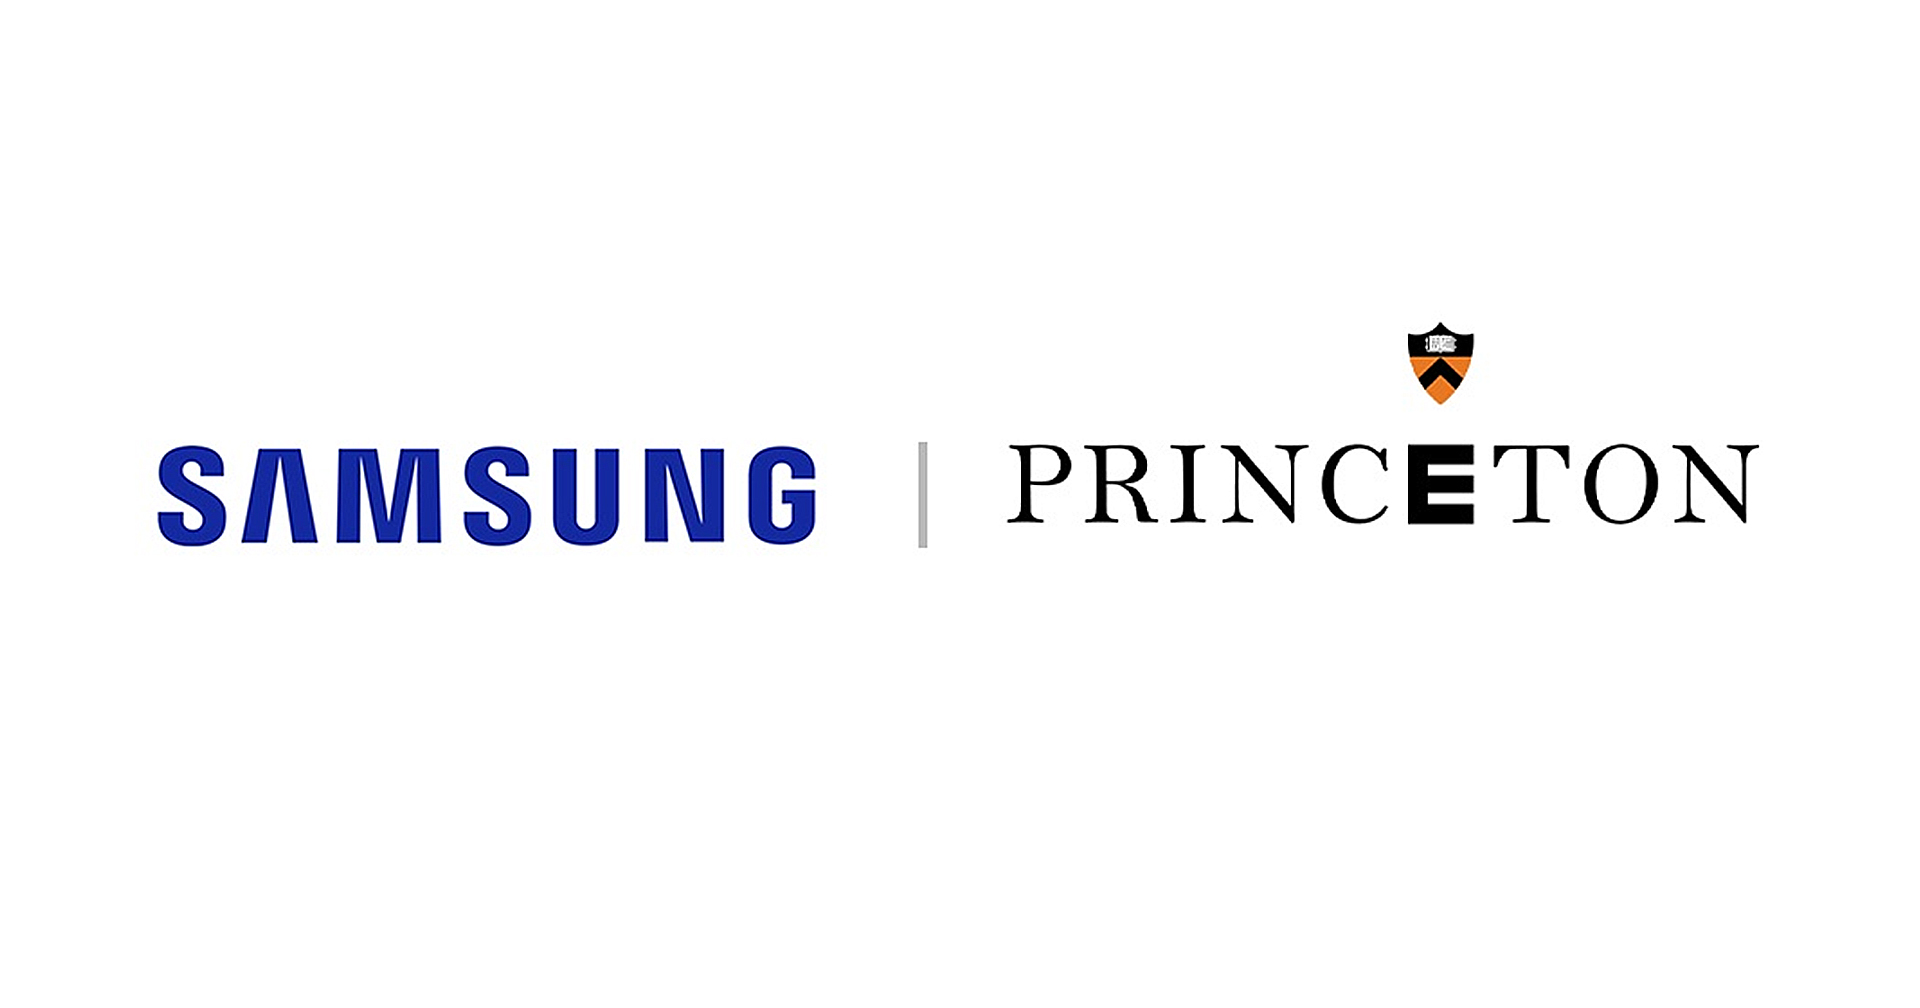 Samsung ร่วมเป็นหนึ่งในผู้ก่อตั้งโครงการริเริ่มพัฒนา 6G ของมหาวิทยาลัยพรินซ์ตัน